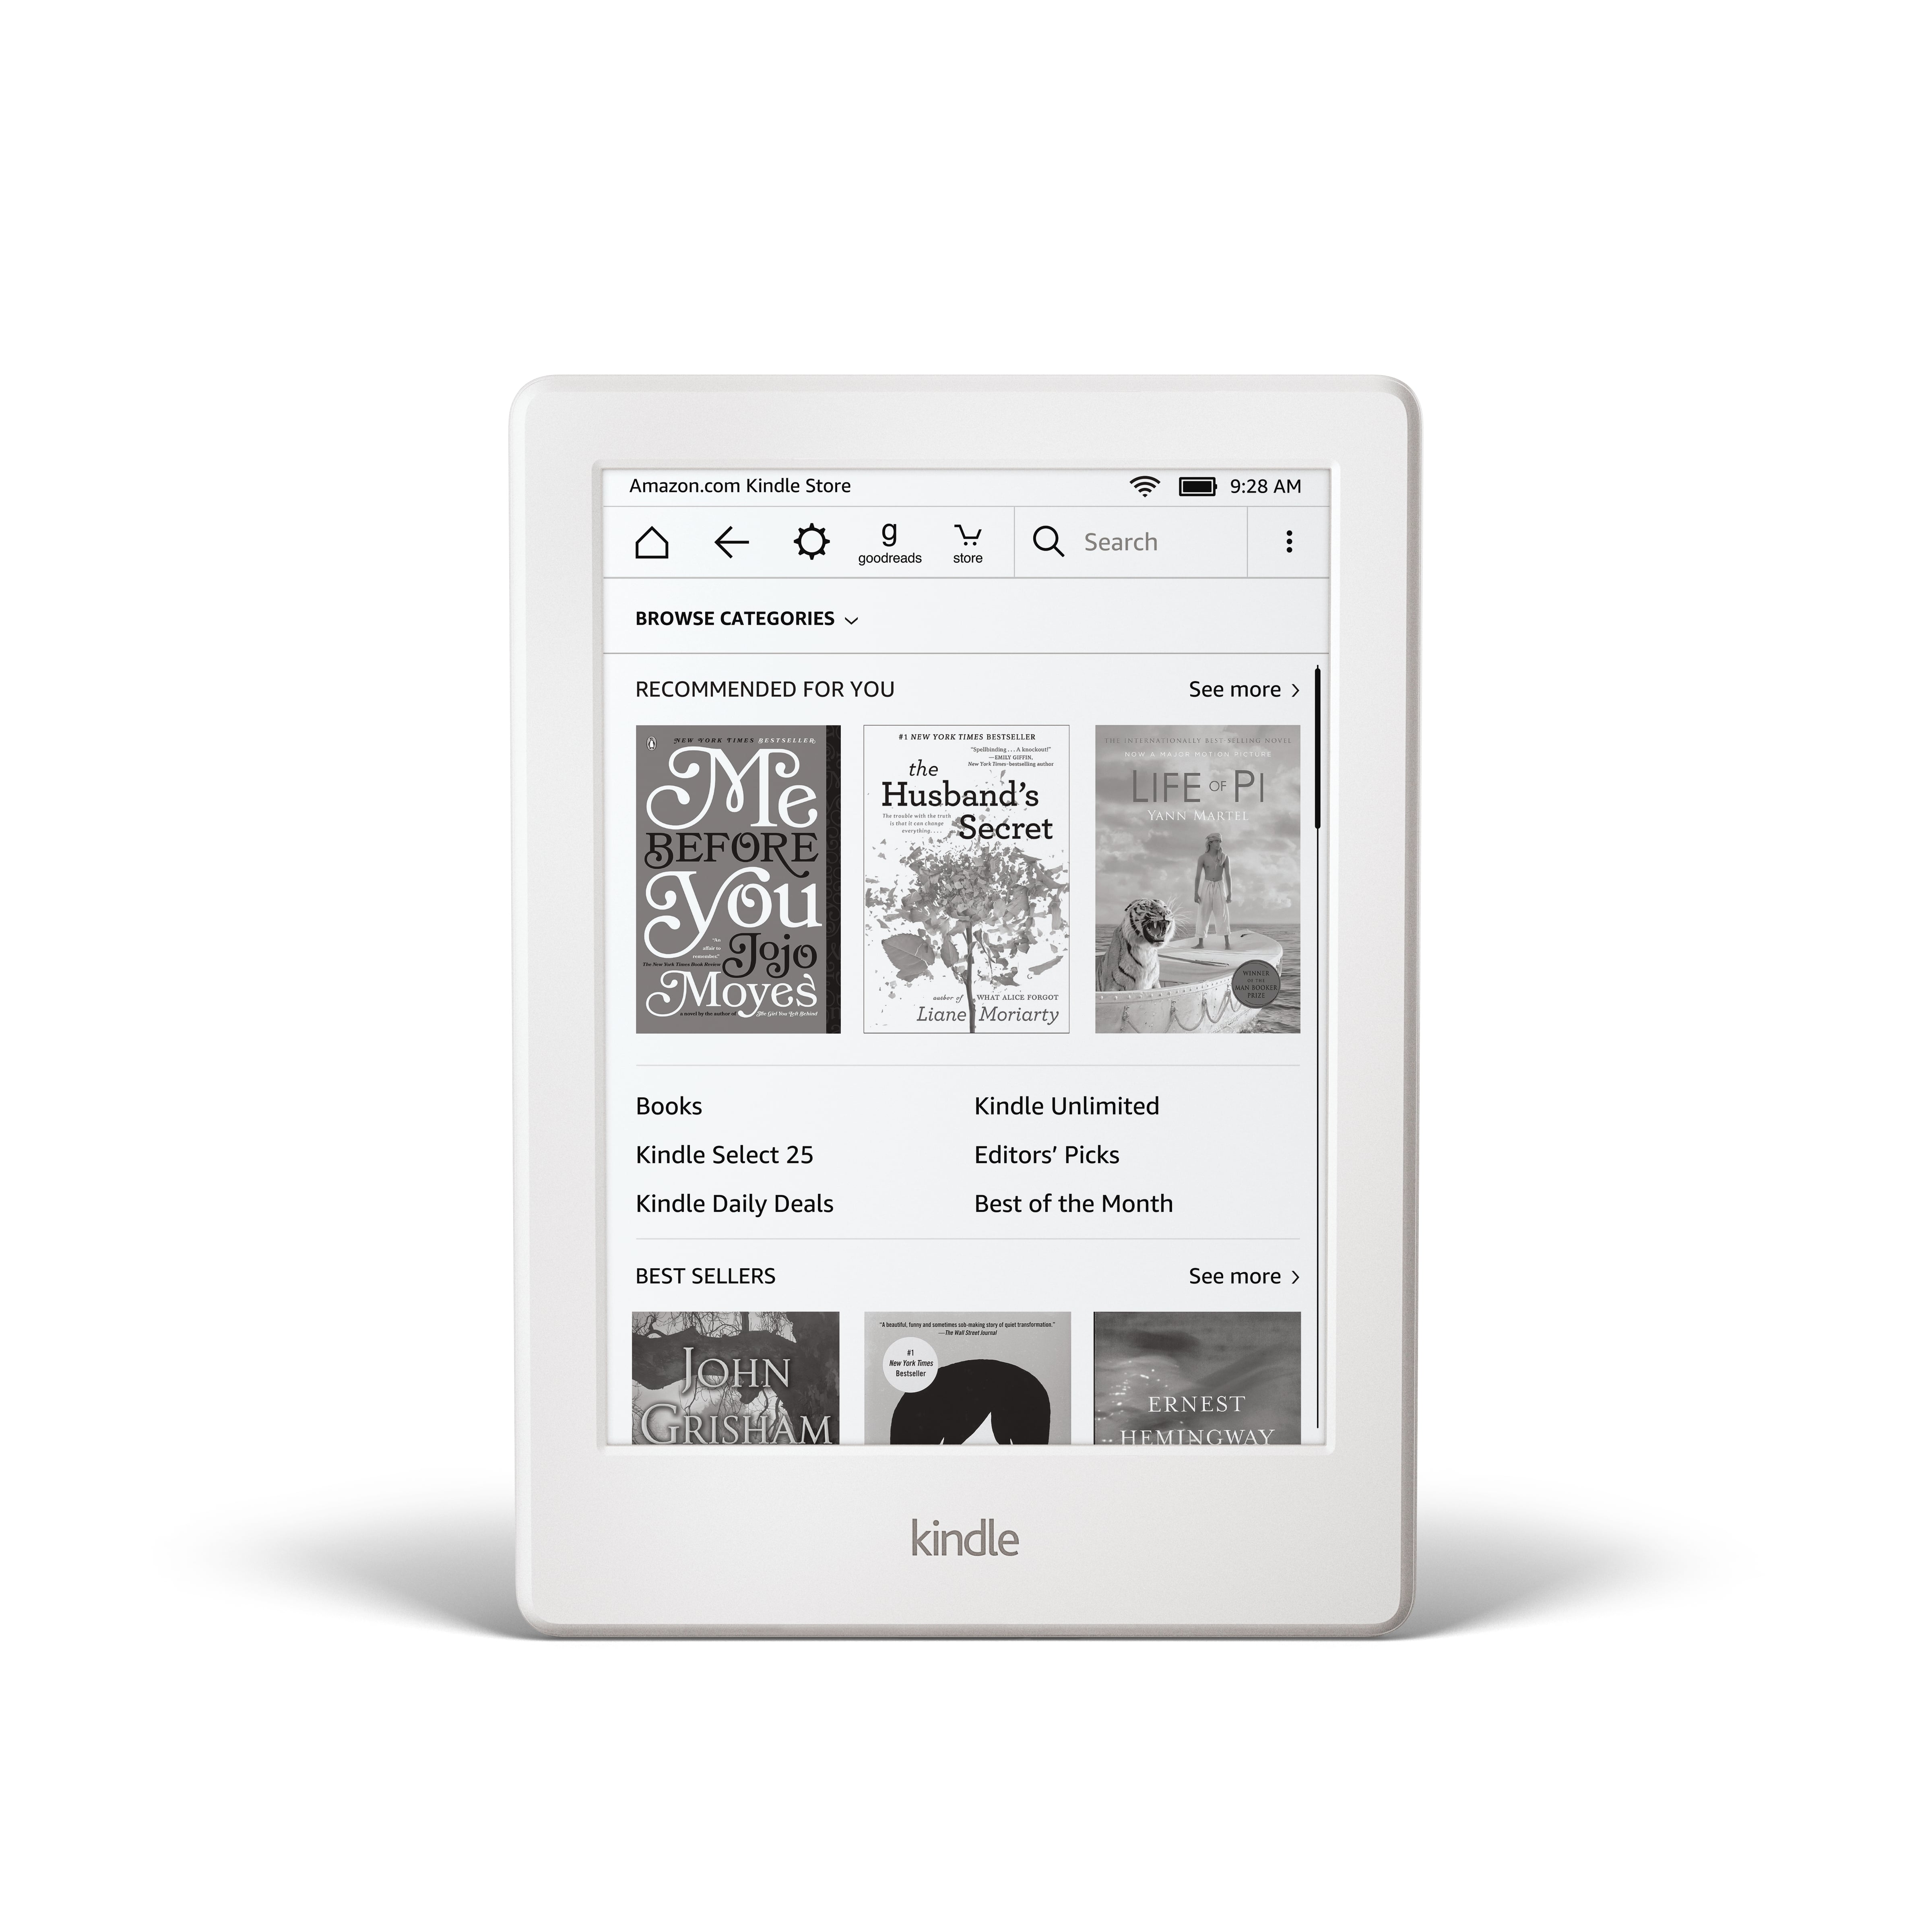 Amazon Kindle and Paperwhite in White Version | POPSUGAR Tech